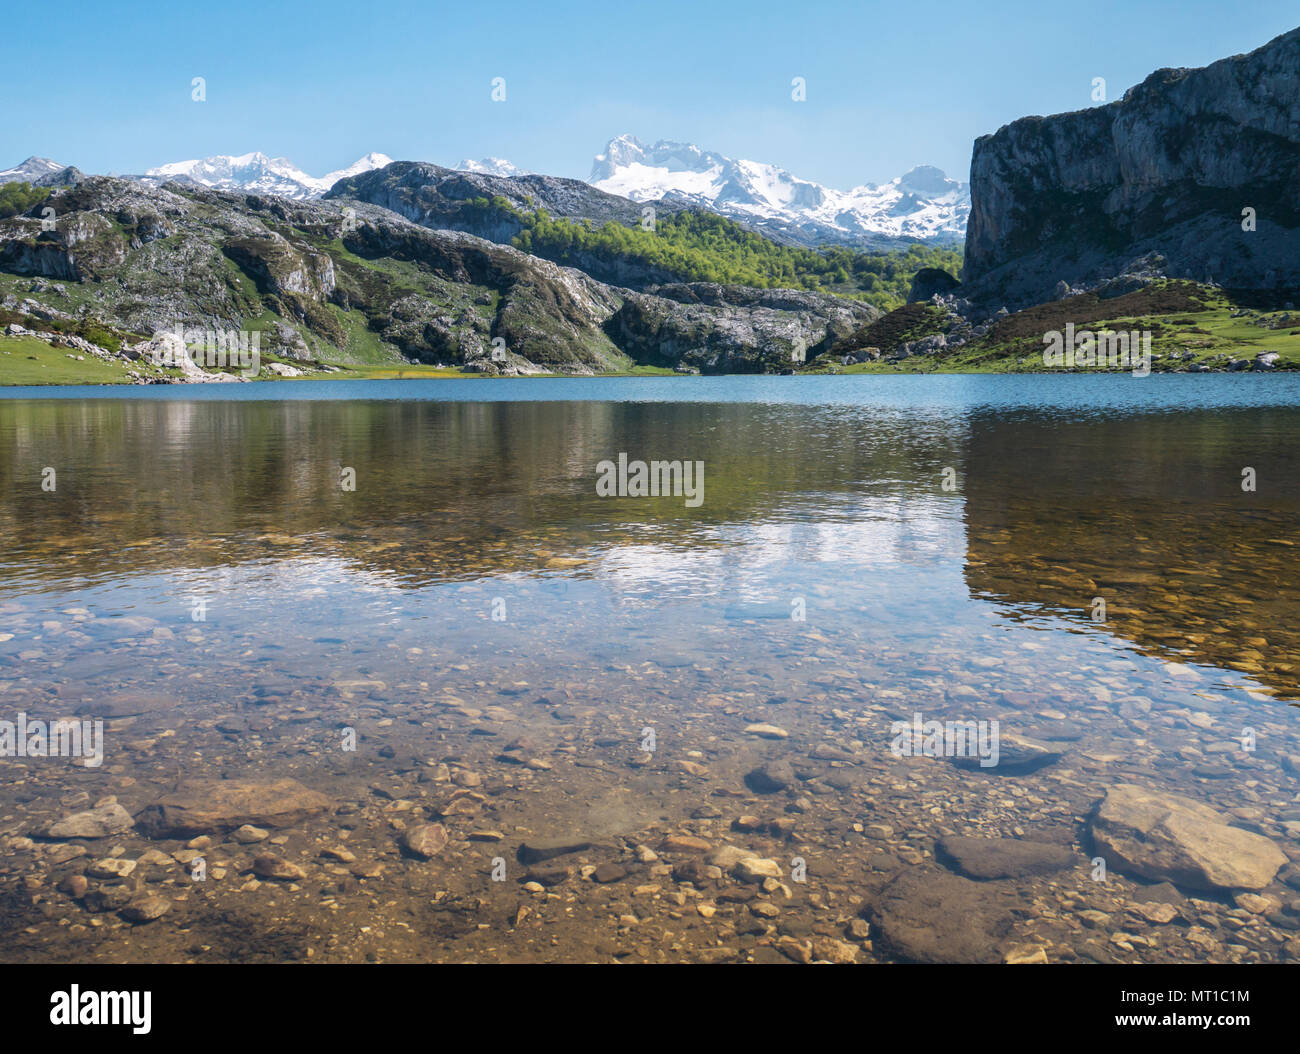 Lac de montagne alpin environnant. Lac Ercina dans le parc national de Picos de Europa, l'Espagne, les Asturies. La neige sur les sommets des montagnes. Banque D'Images